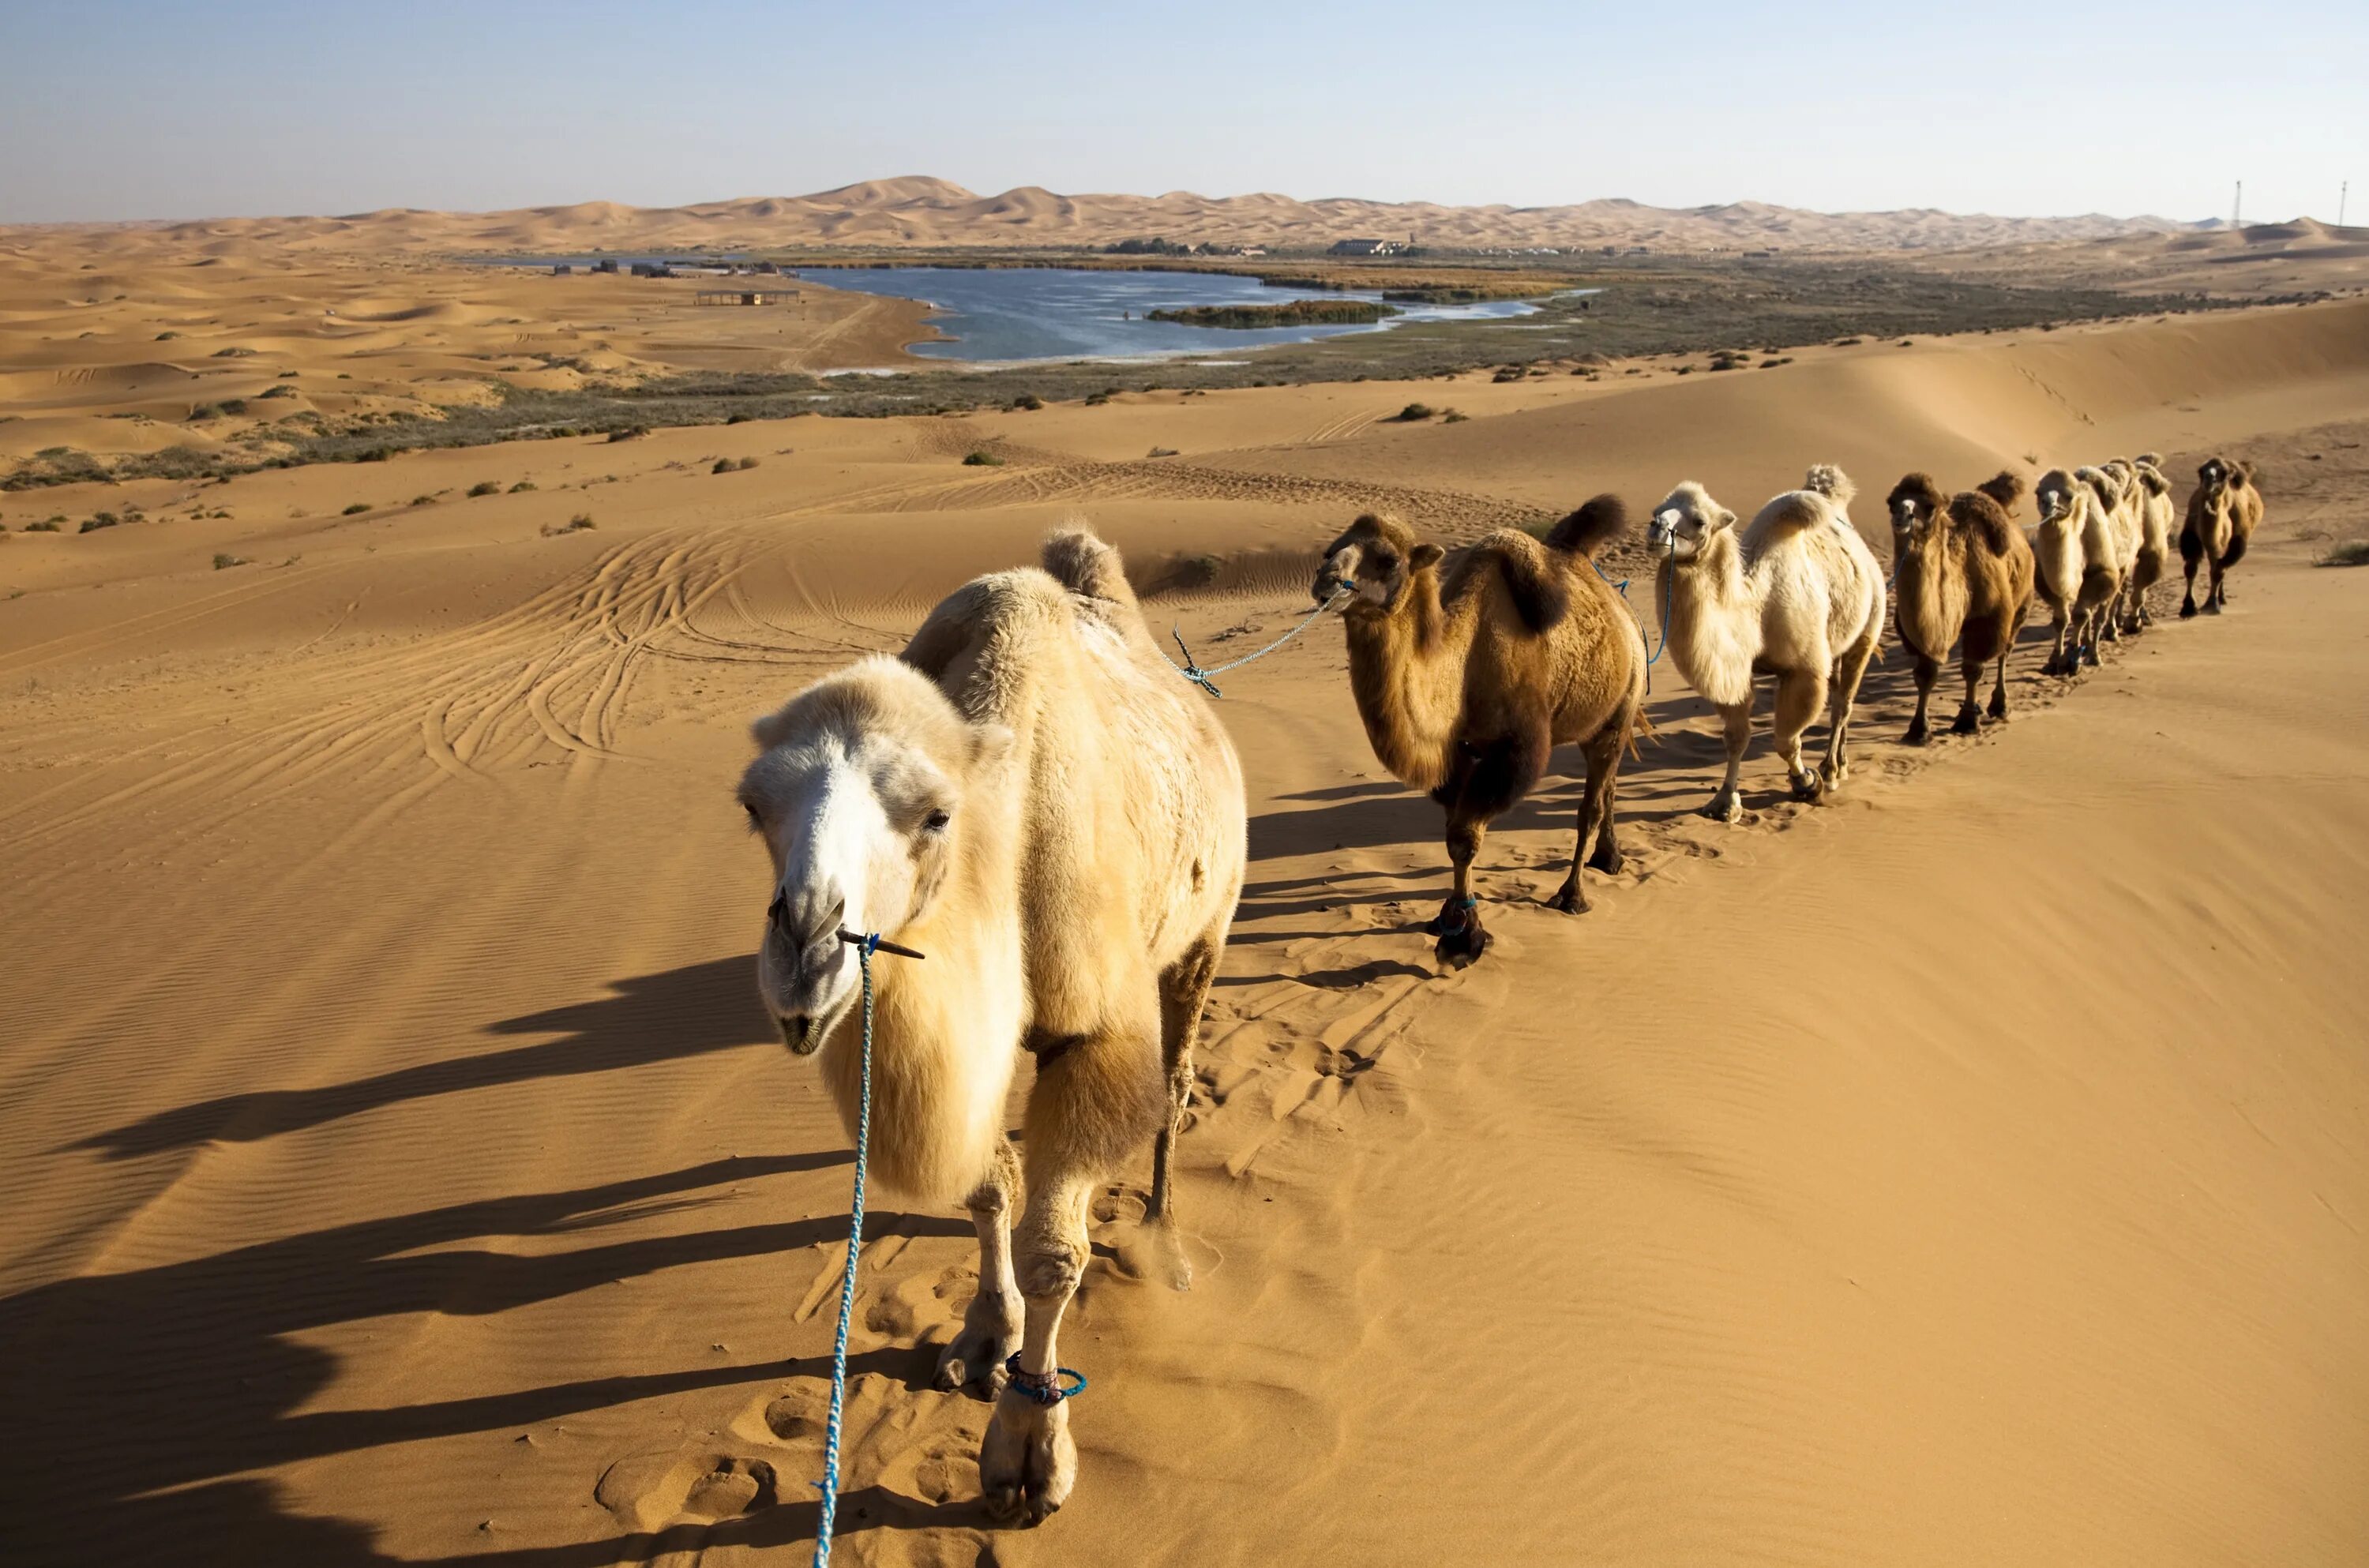 Караван сегодня. Верблюд Караван пустыни. Караван с верблюдами в пустыне. Караван верблюдов в пустыне. Верблюд в пустыне фото Караван.